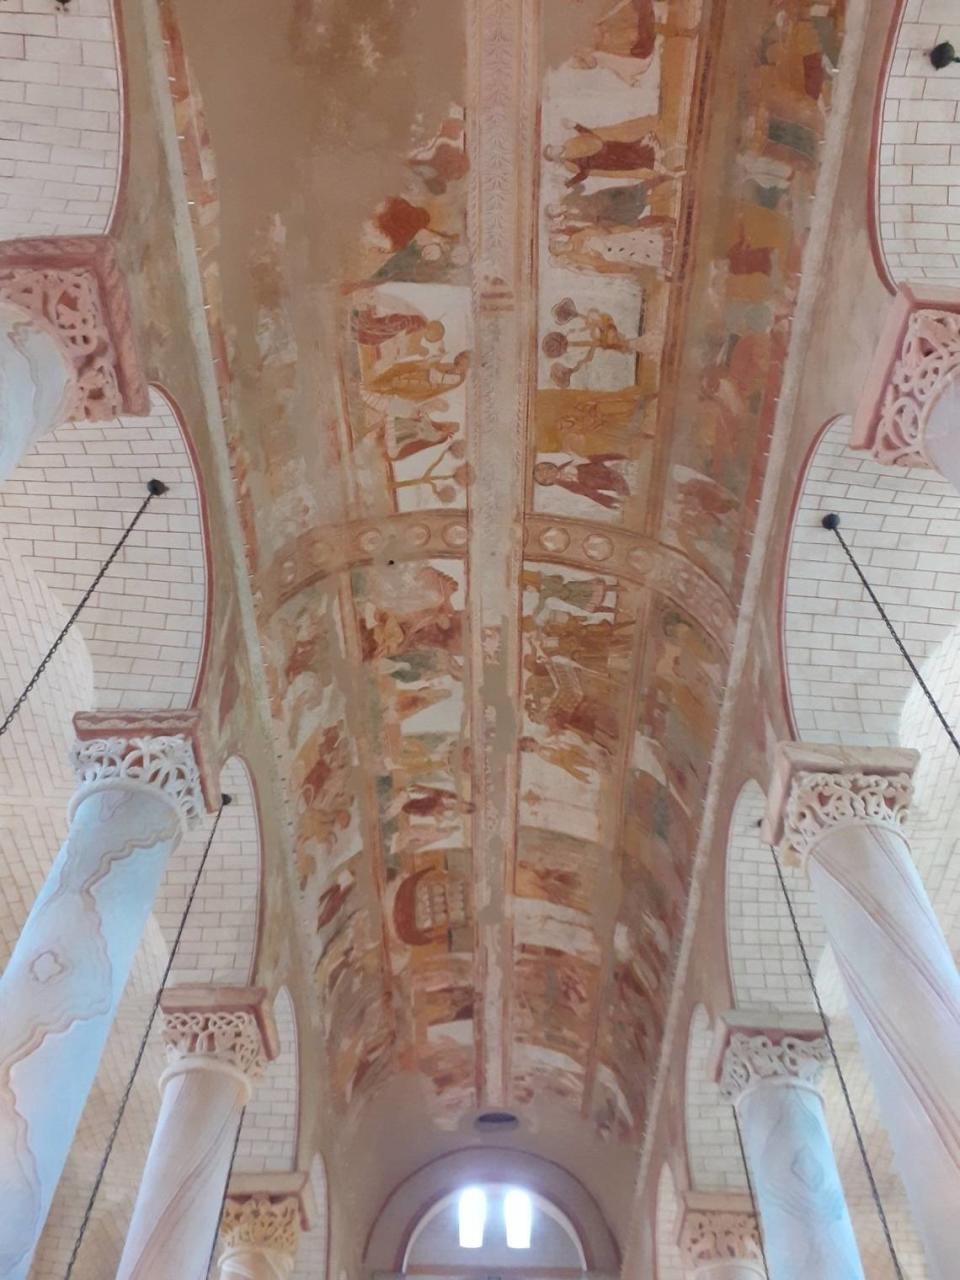 La nave principal y sus frescos en la iglesia de Saint-Savin. Fotos cortesía/William Navarrete